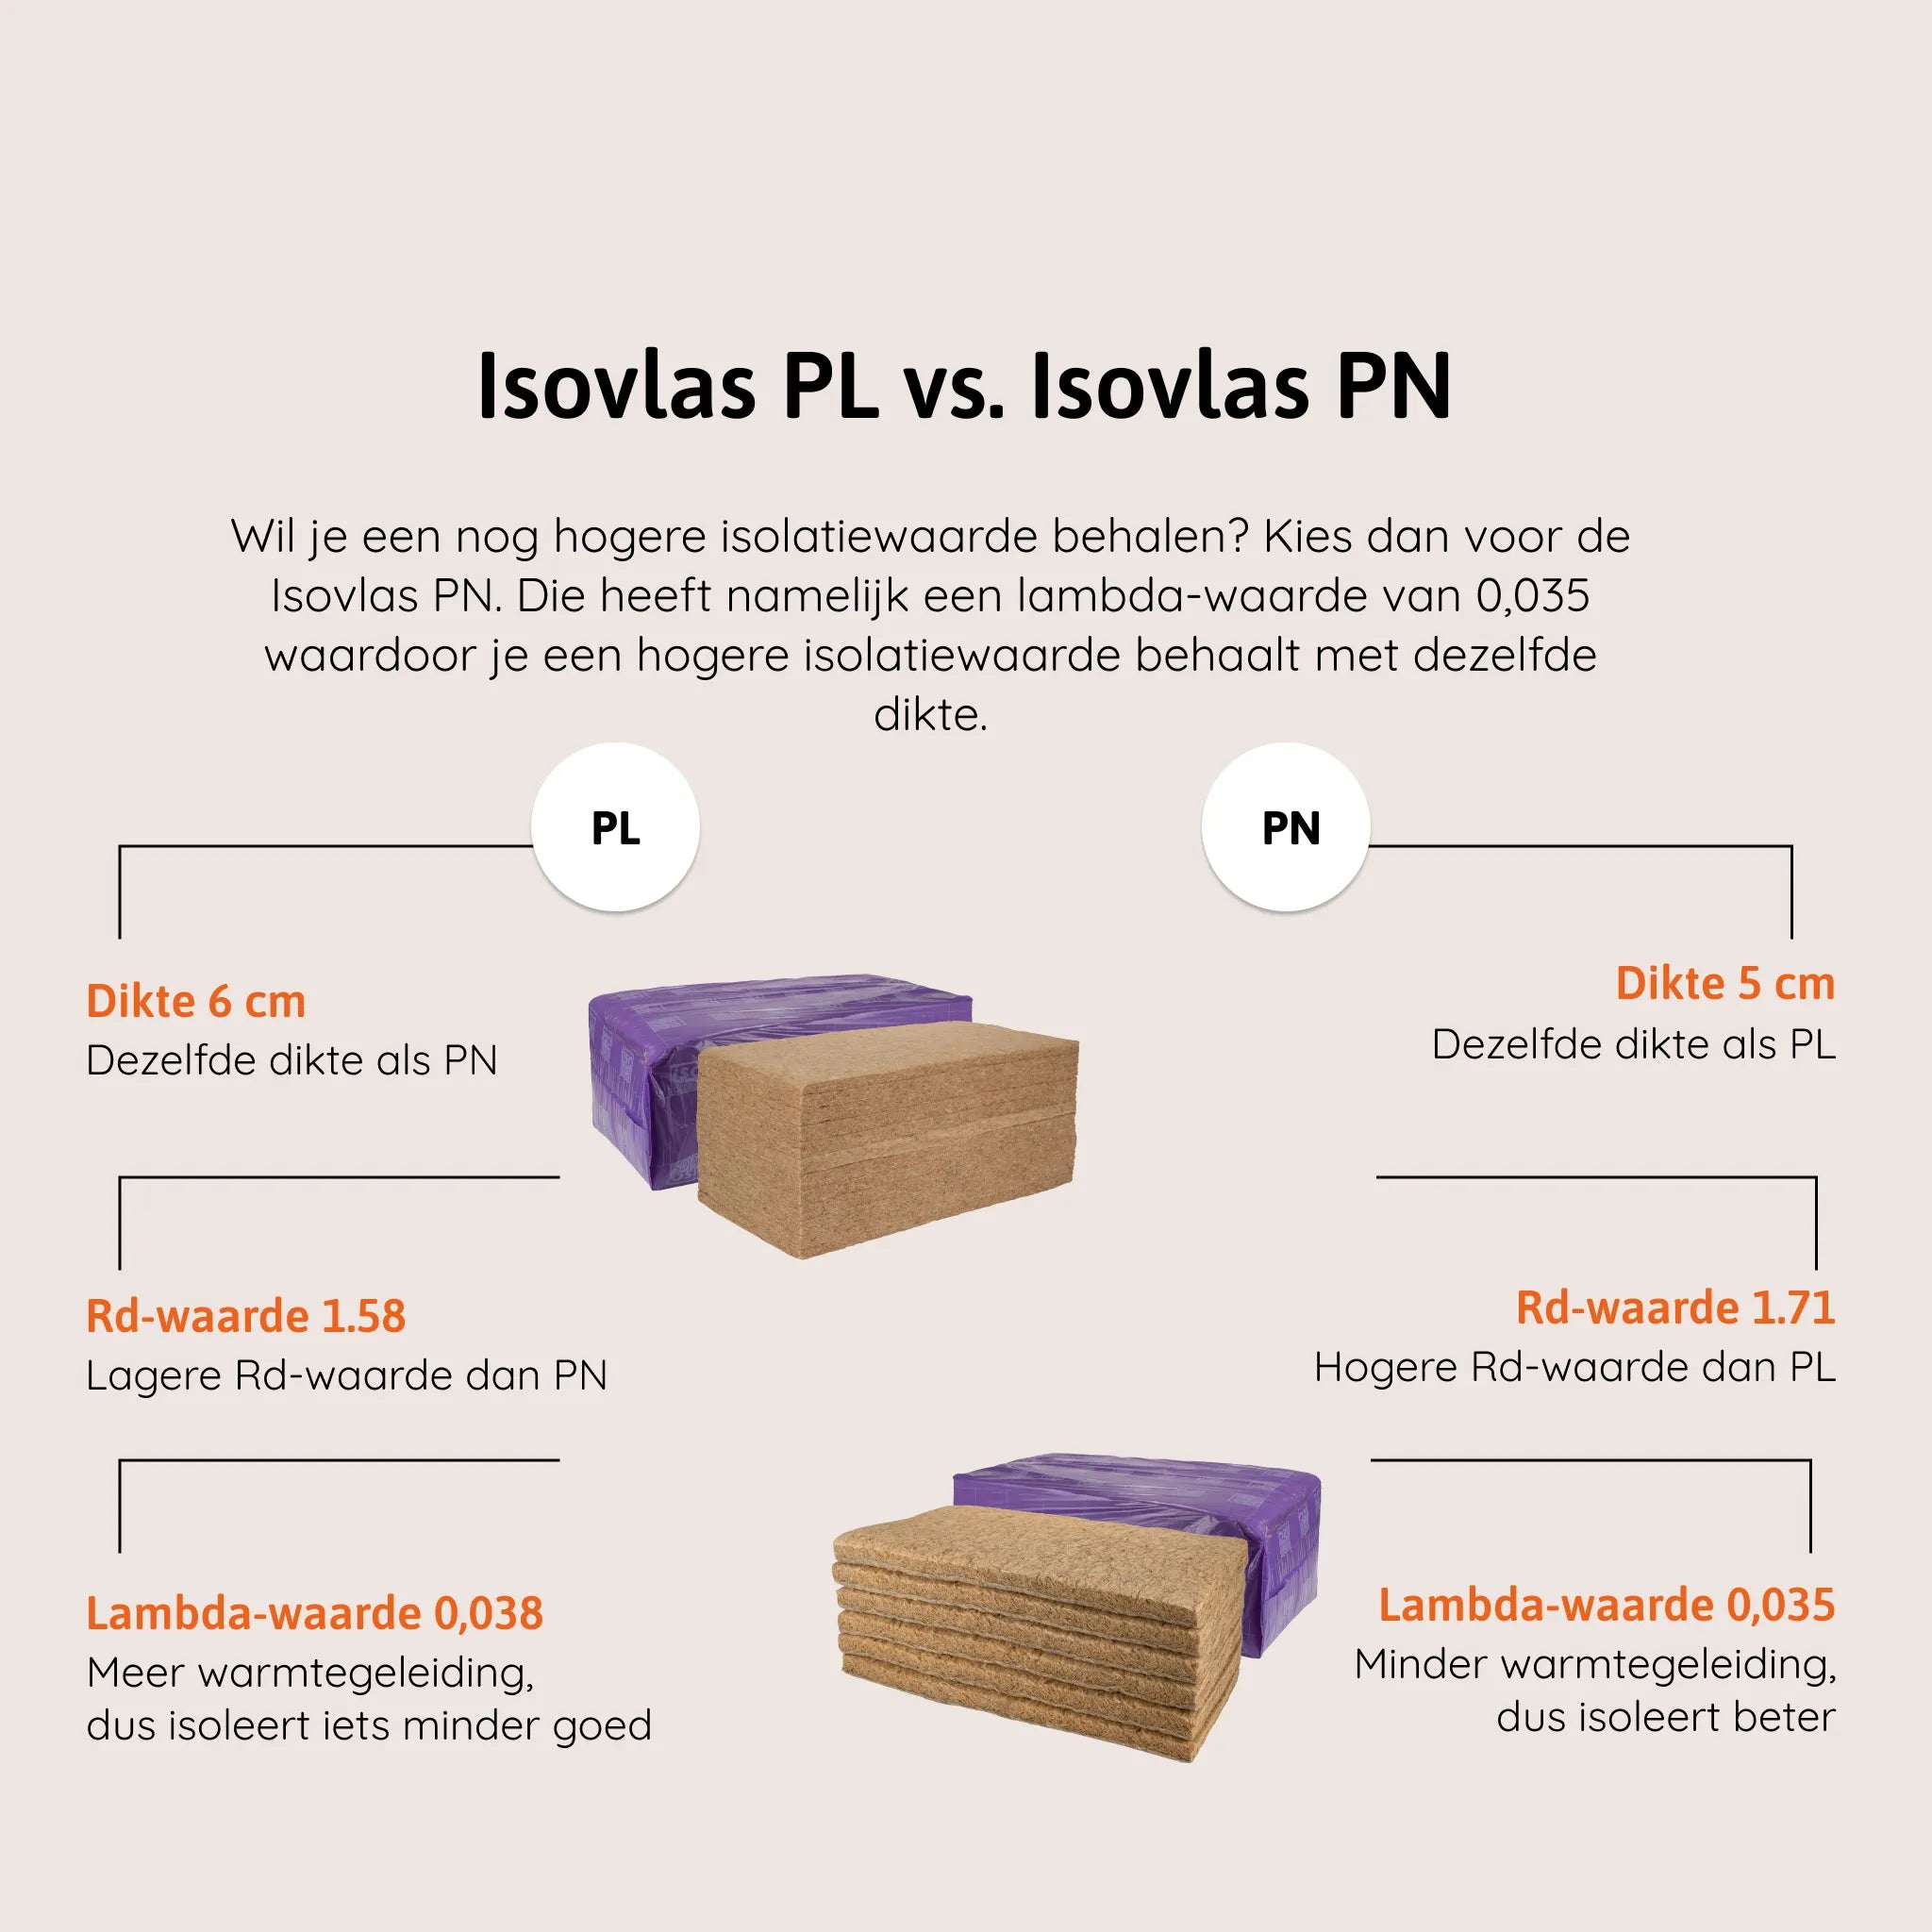 Isovlas PL vs PN